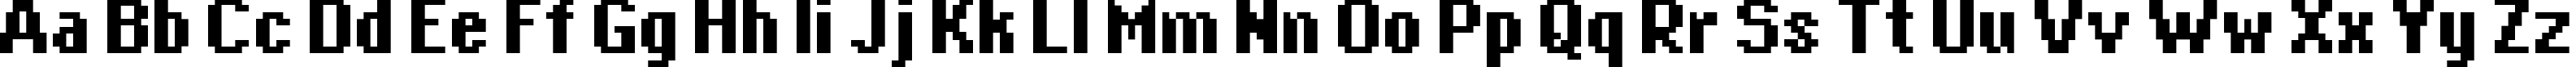 Пример написания английского алфавита шрифтом copy 08_65